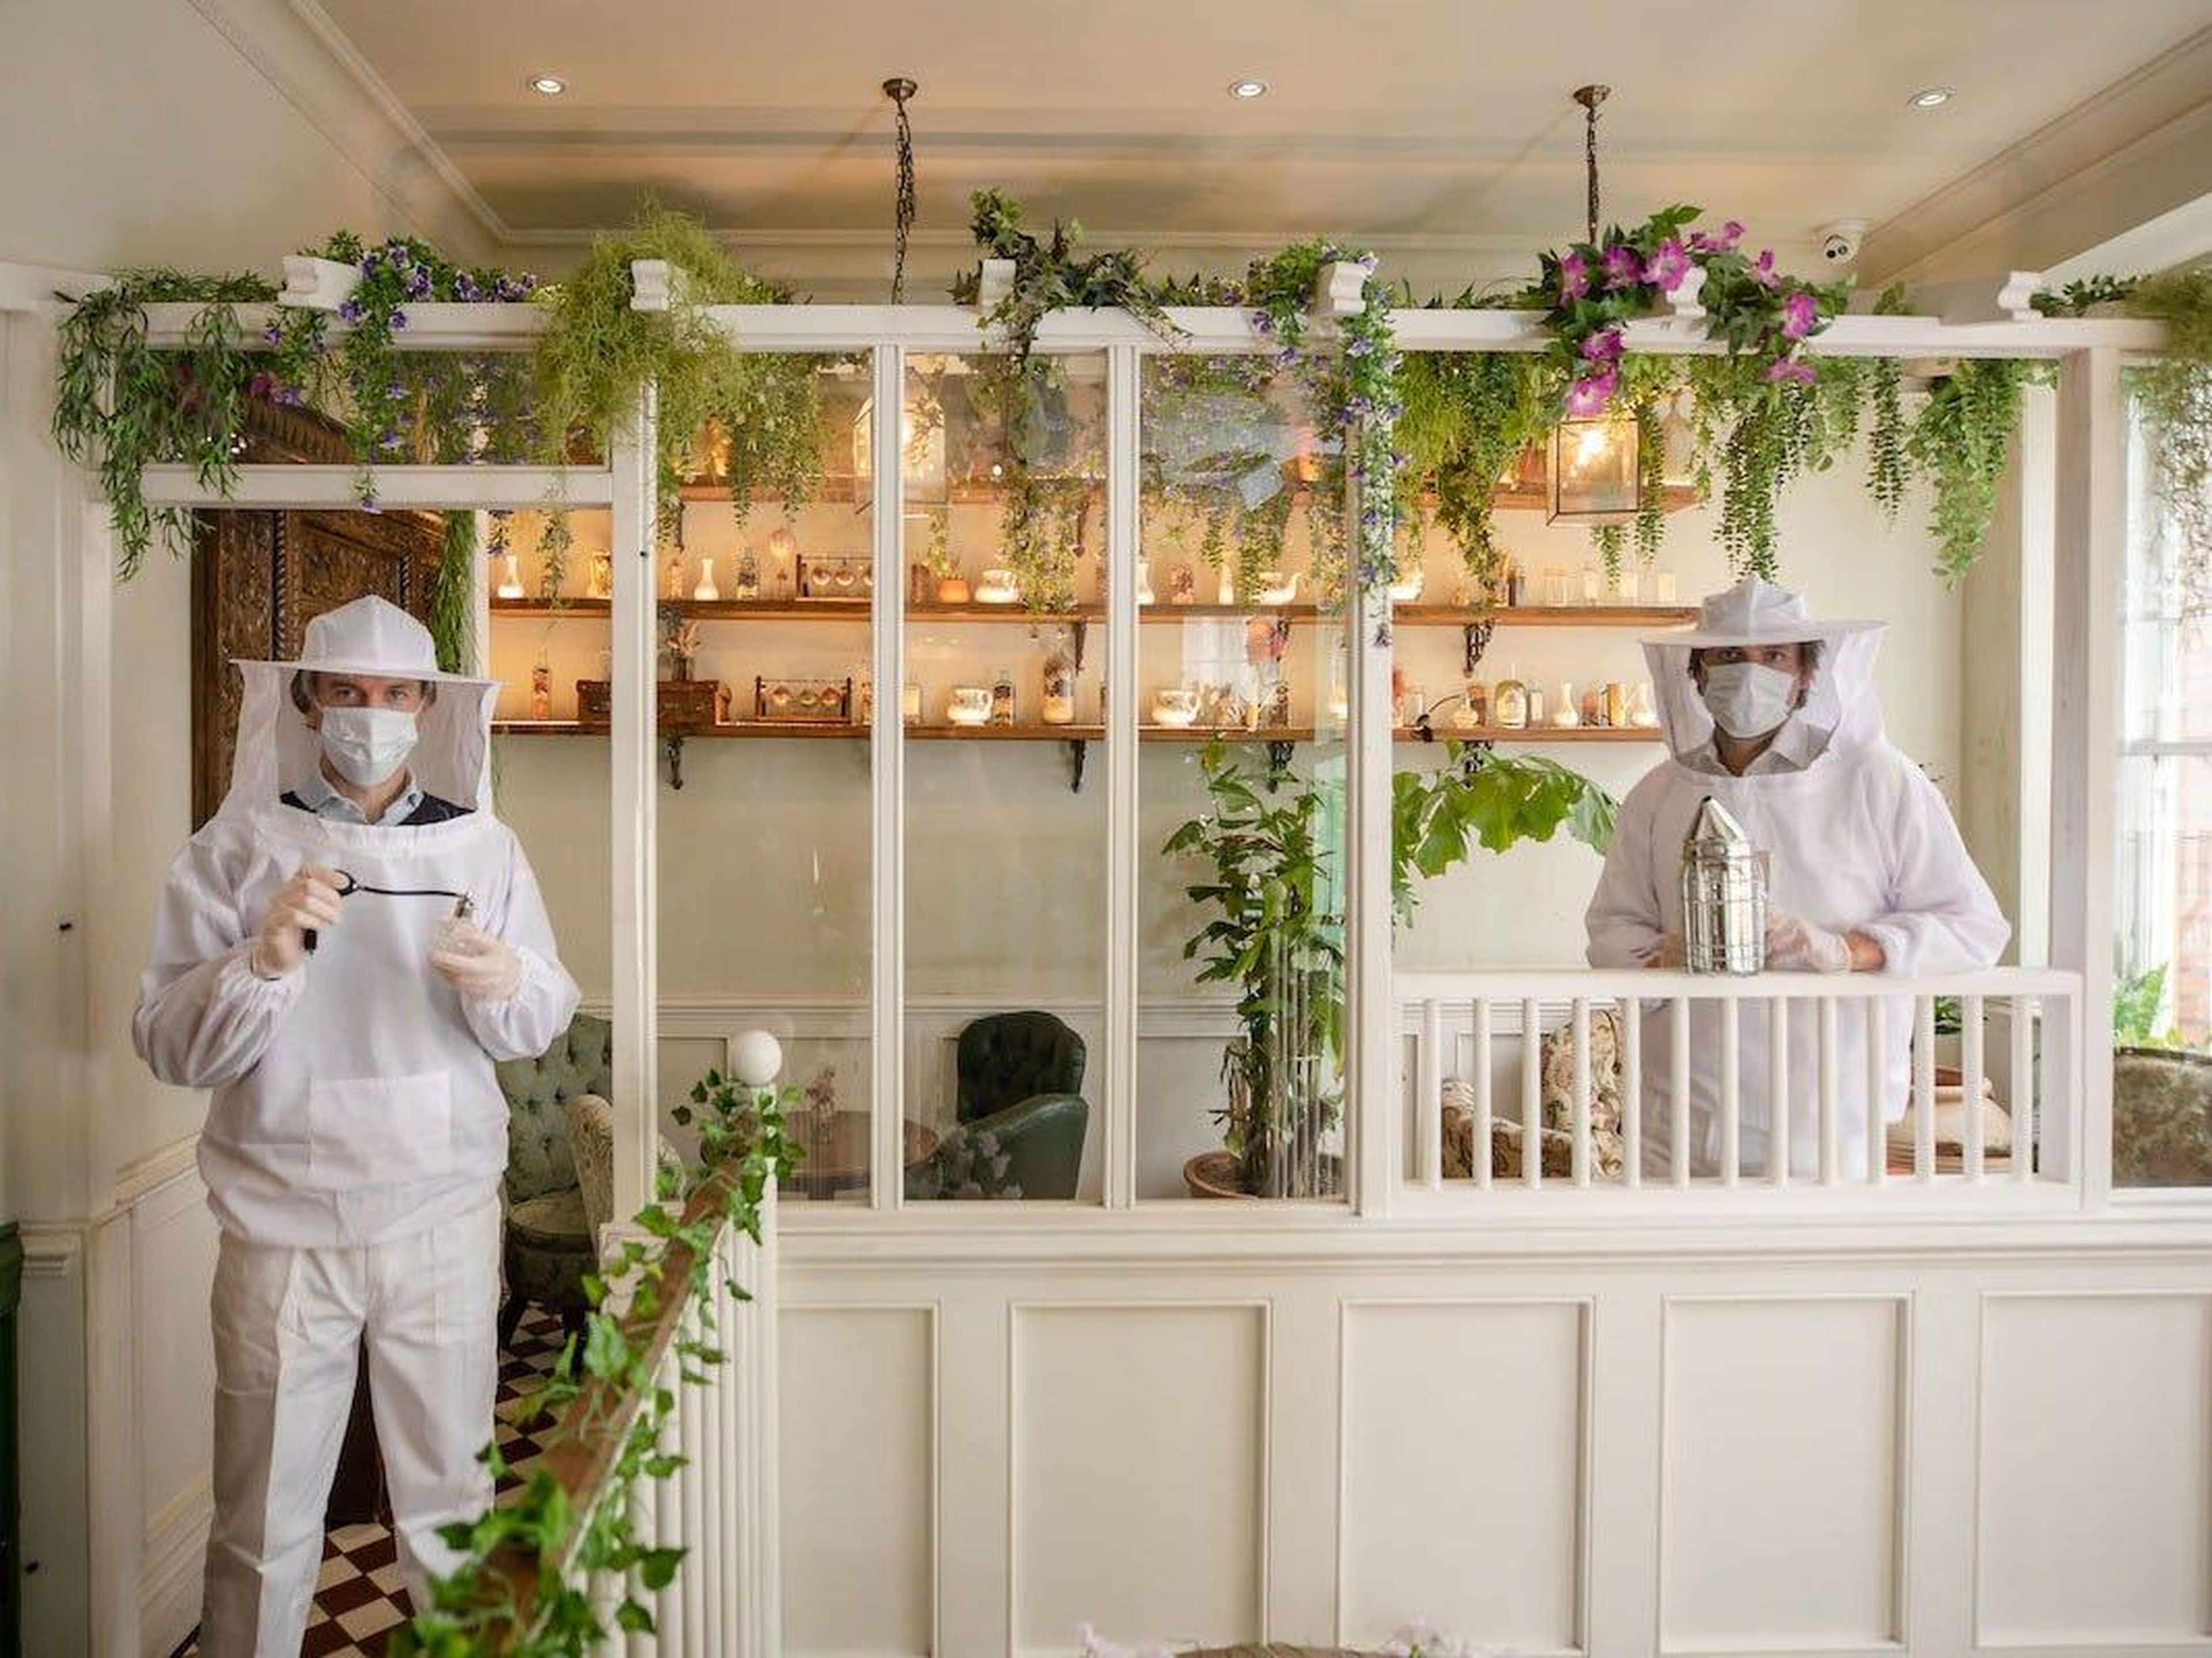 Los camareros, llamados botánicos de la casa, usarán EPPs en forma de trajes de apicultor.